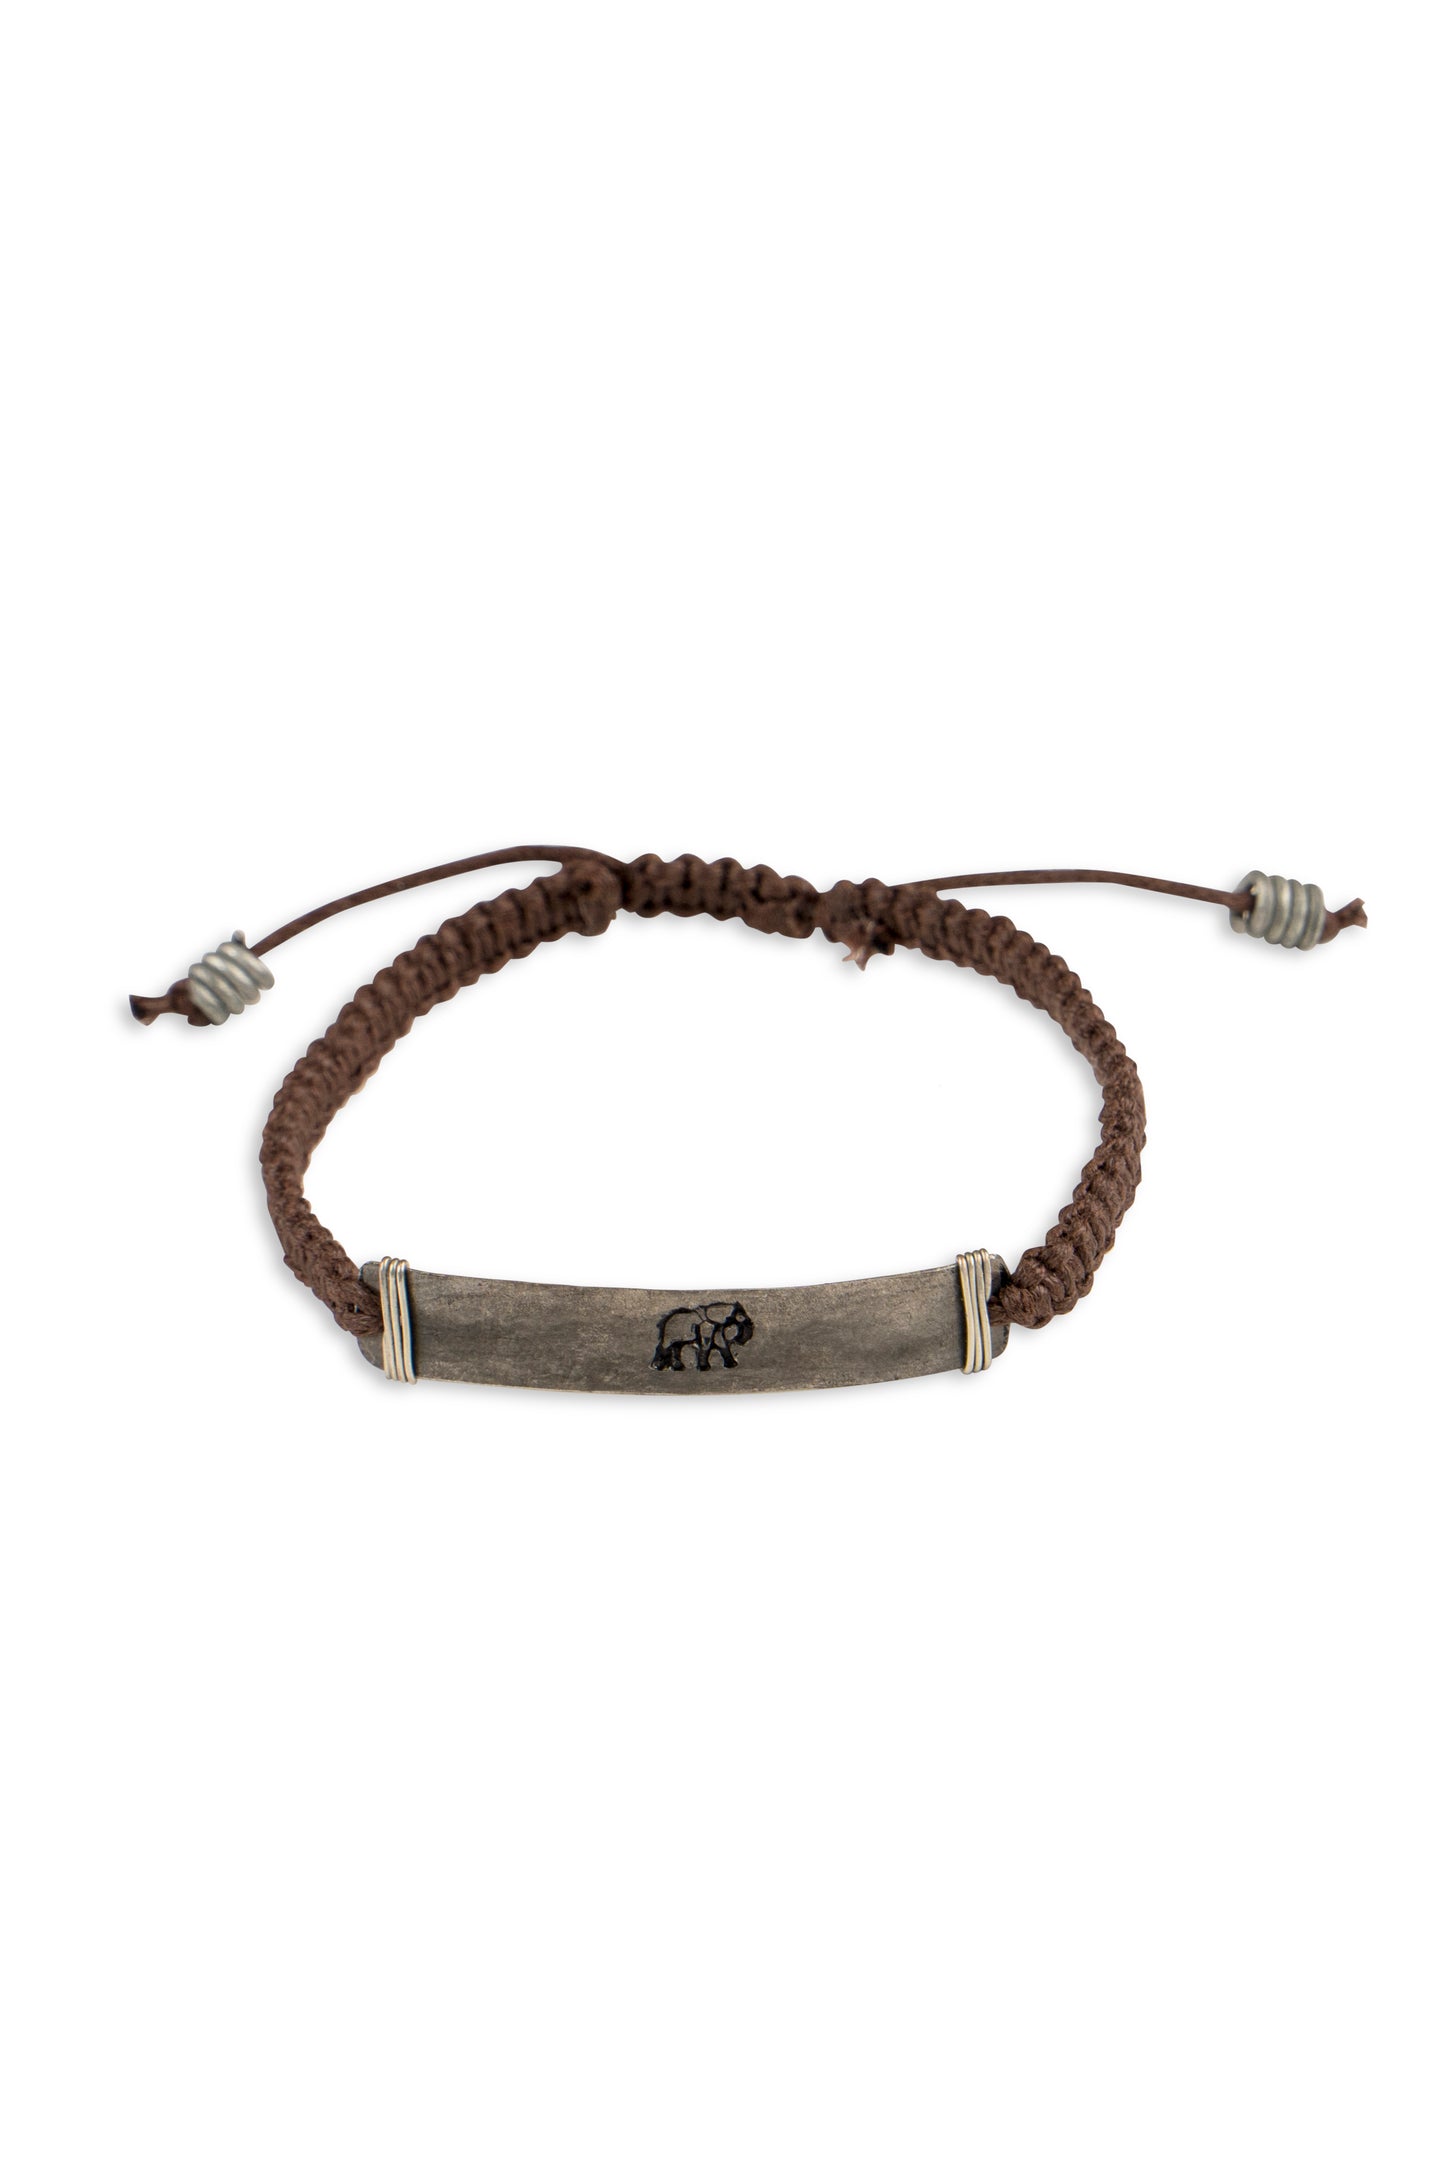 Hammered snare bracelet with elephant stamp